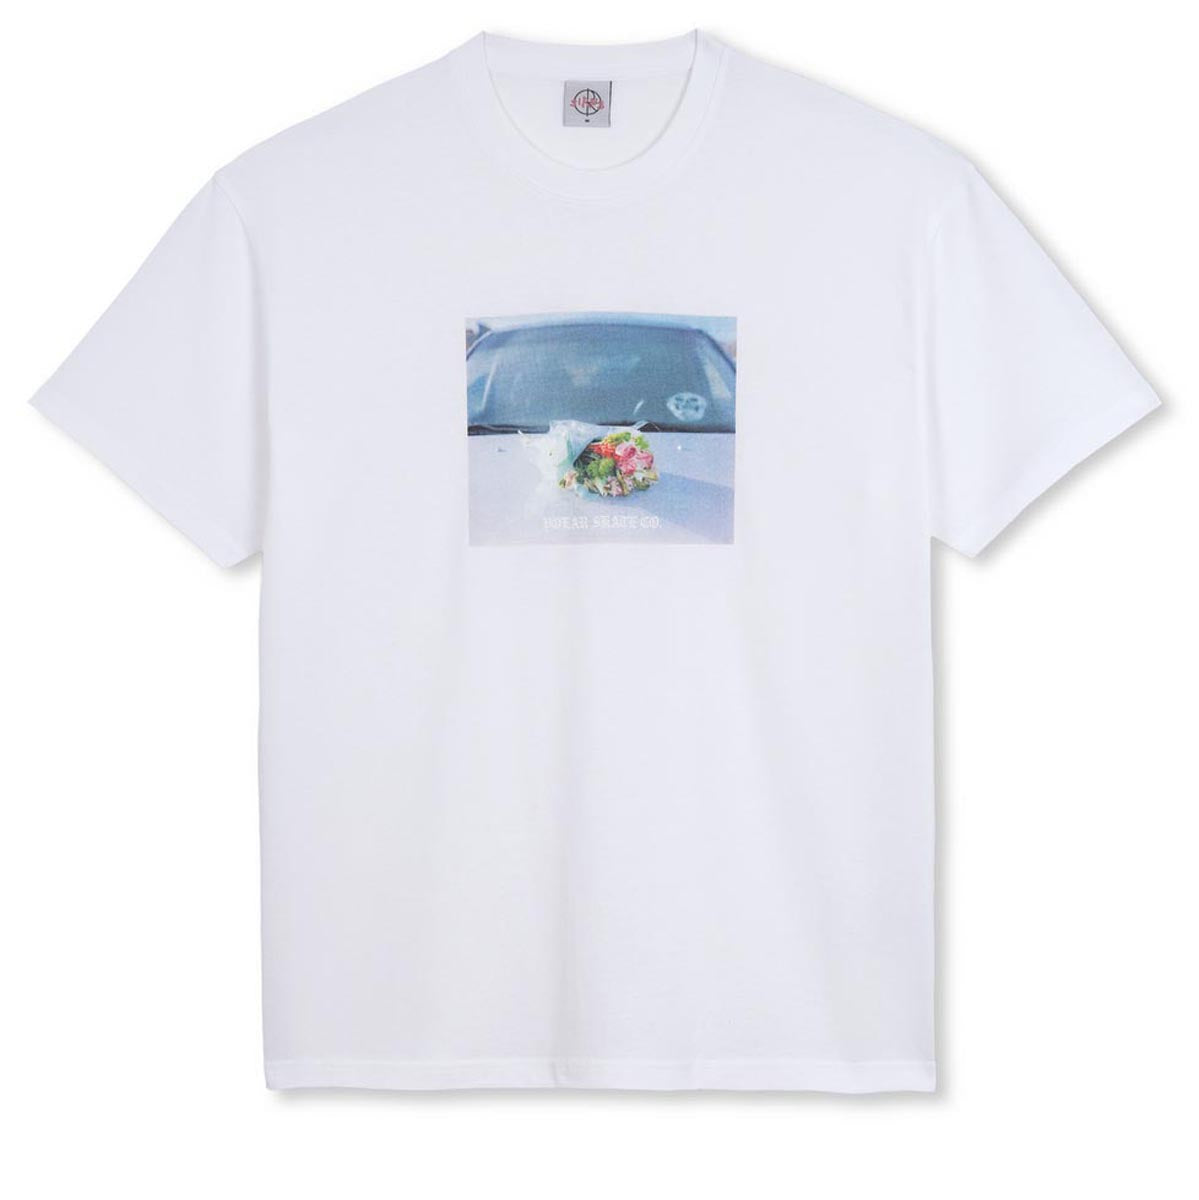 Polar Dead Flowers T-Shirt - White image 1